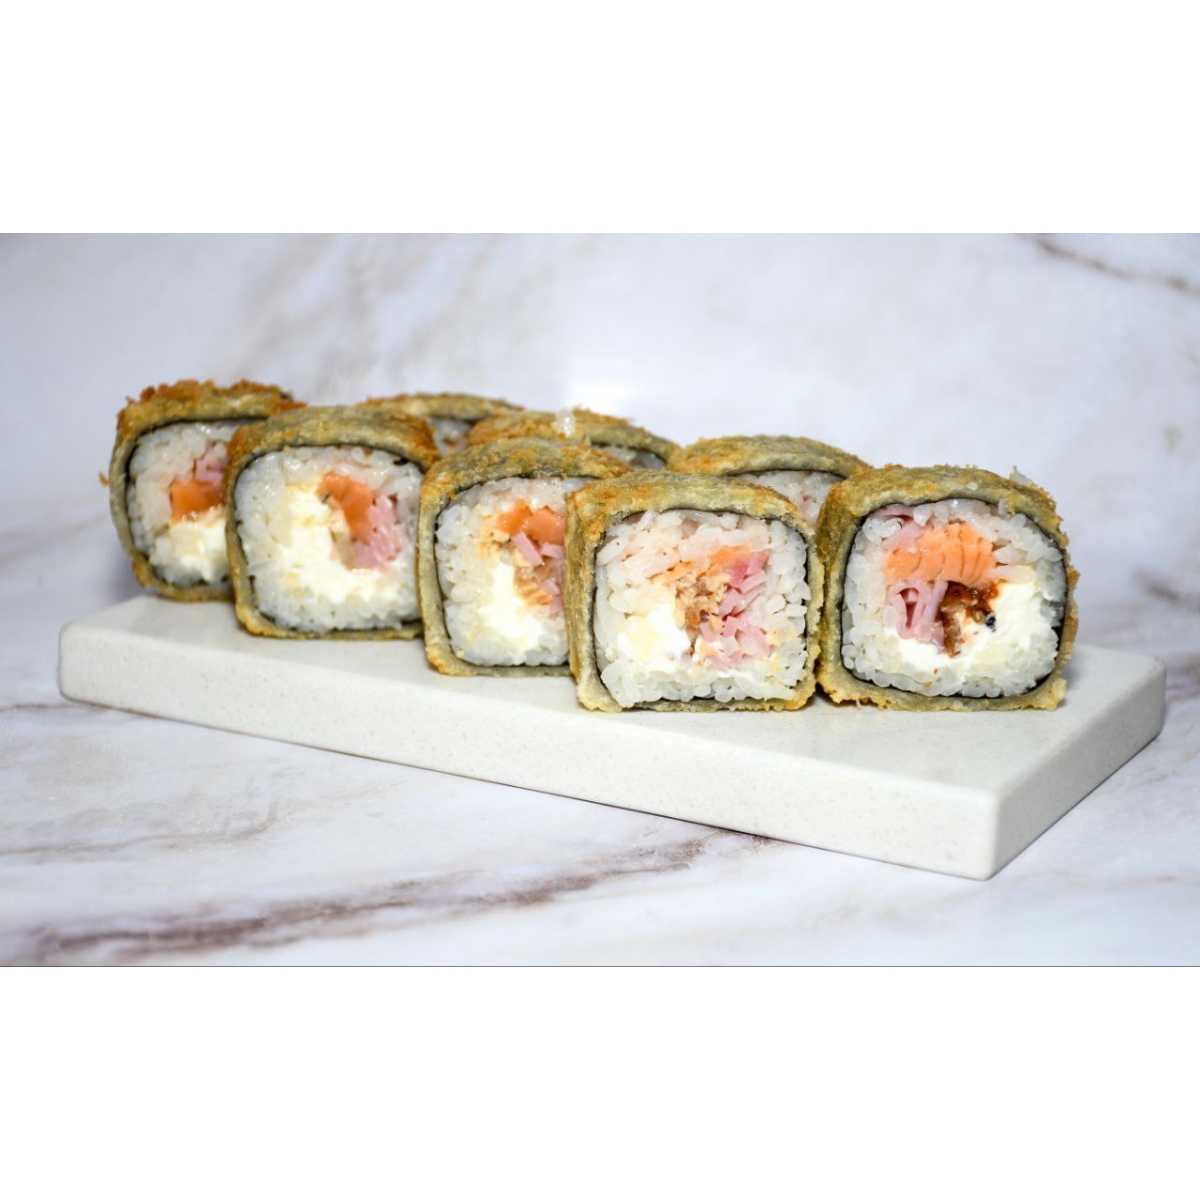 Заказать суши в краснодаре с бесплатной доставкой тануки фото 28